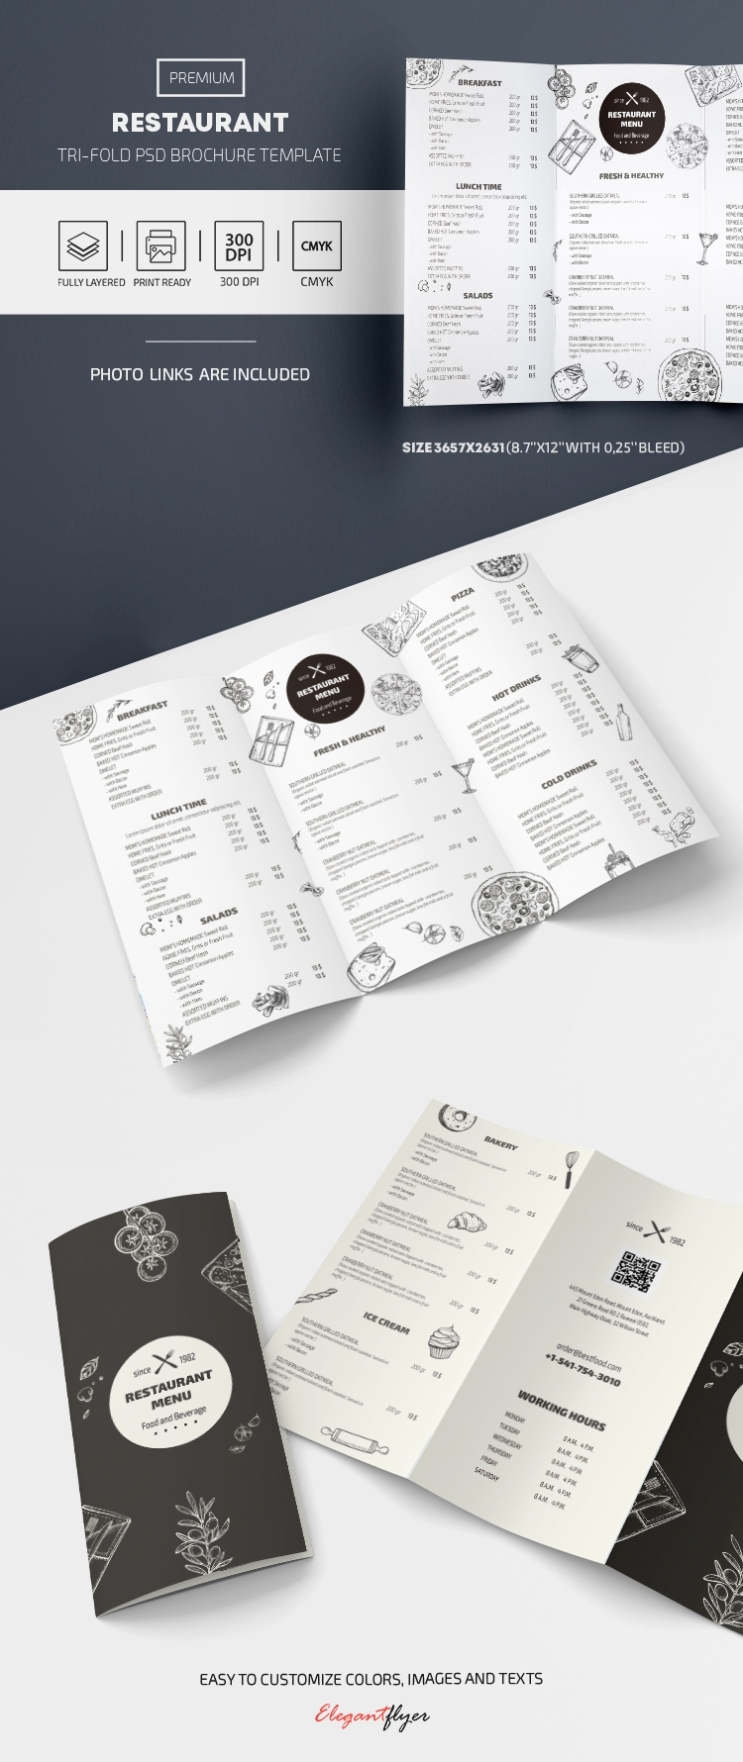 Restaurant Tri Fold Menu | By Elegantflyer For Tri Fold Menu Template Photoshop